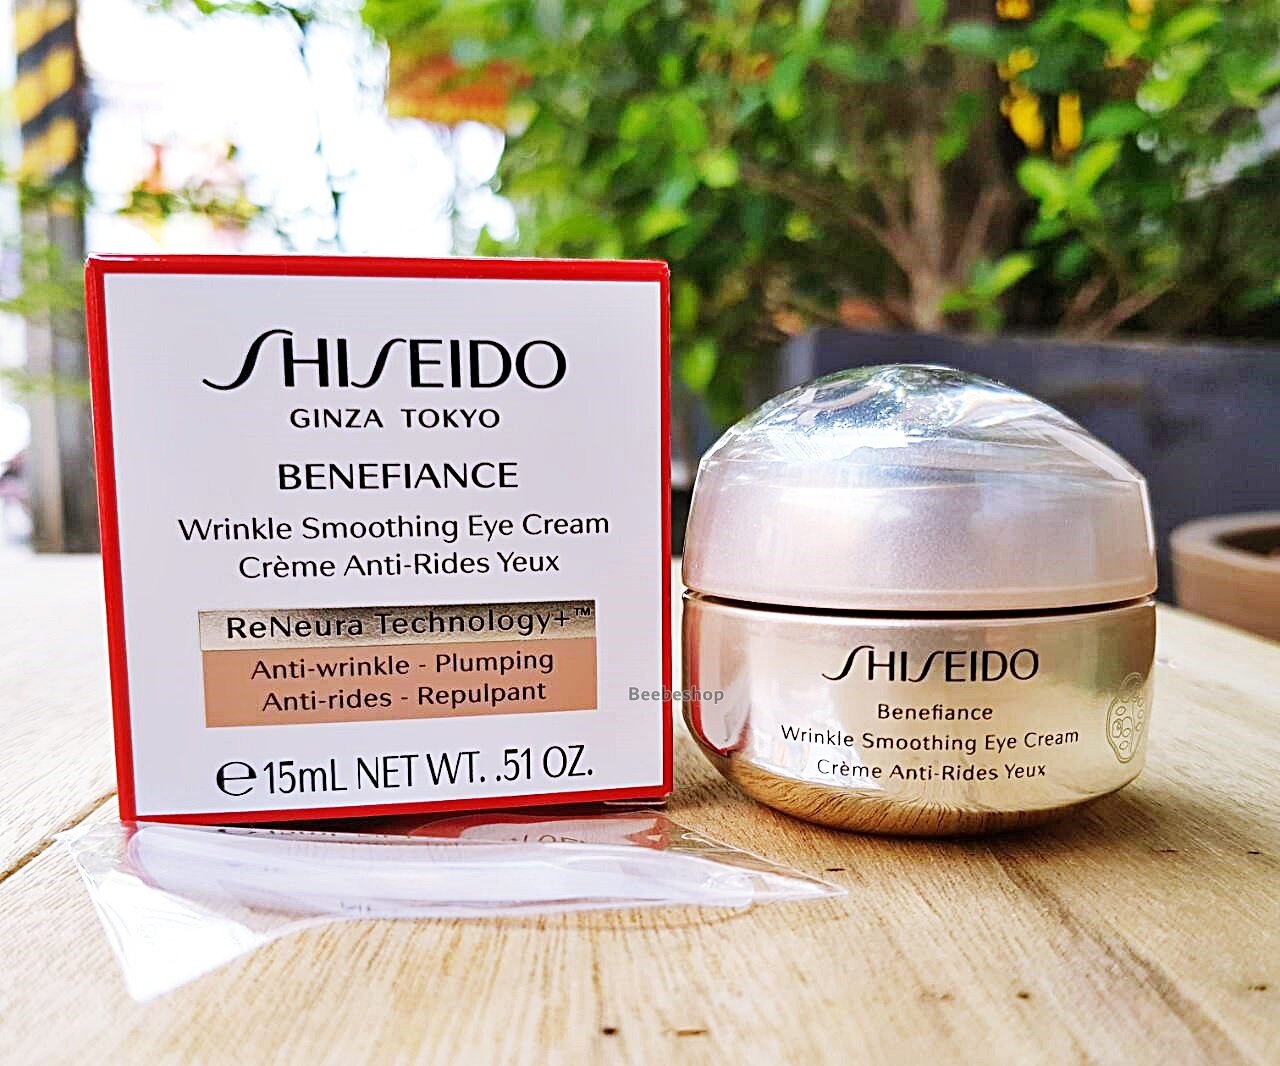 Shiseido benefiance wrinkle smoothing. Shiseido Benefiance Eye Cream. Shiseido Wrinkle Smoothing Cream. Shiseido Benefiance Wrinkle Smoothing Eye. Shiseido // крем Benefiance Wrinkle Smoothing Eye Cream 15ml.